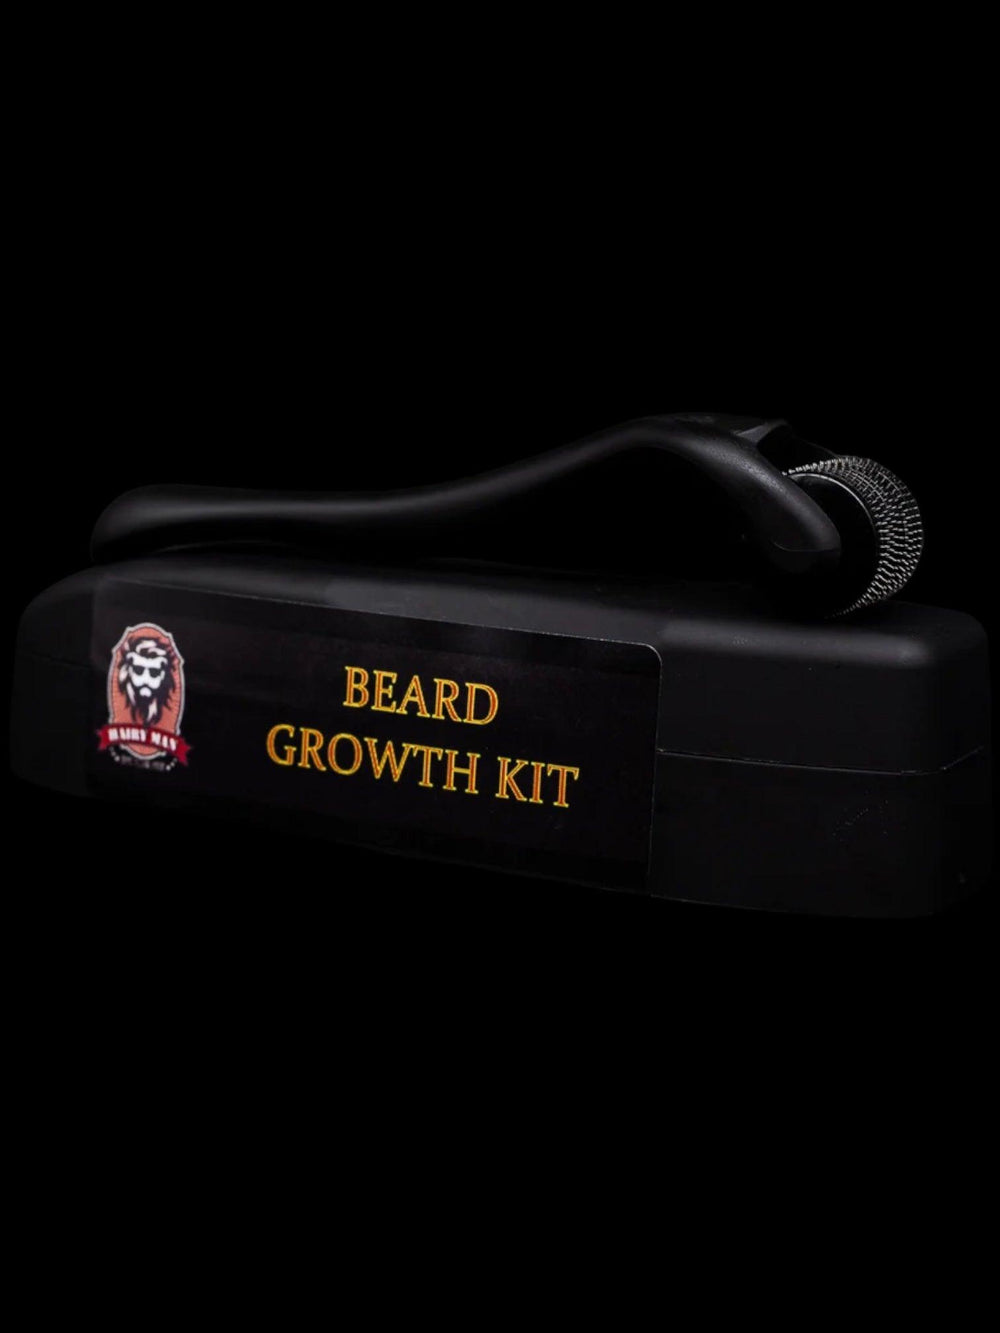 Beard growth kit - handmade in australia - natural and organic ingredients- mens grooming products - dermaroller 